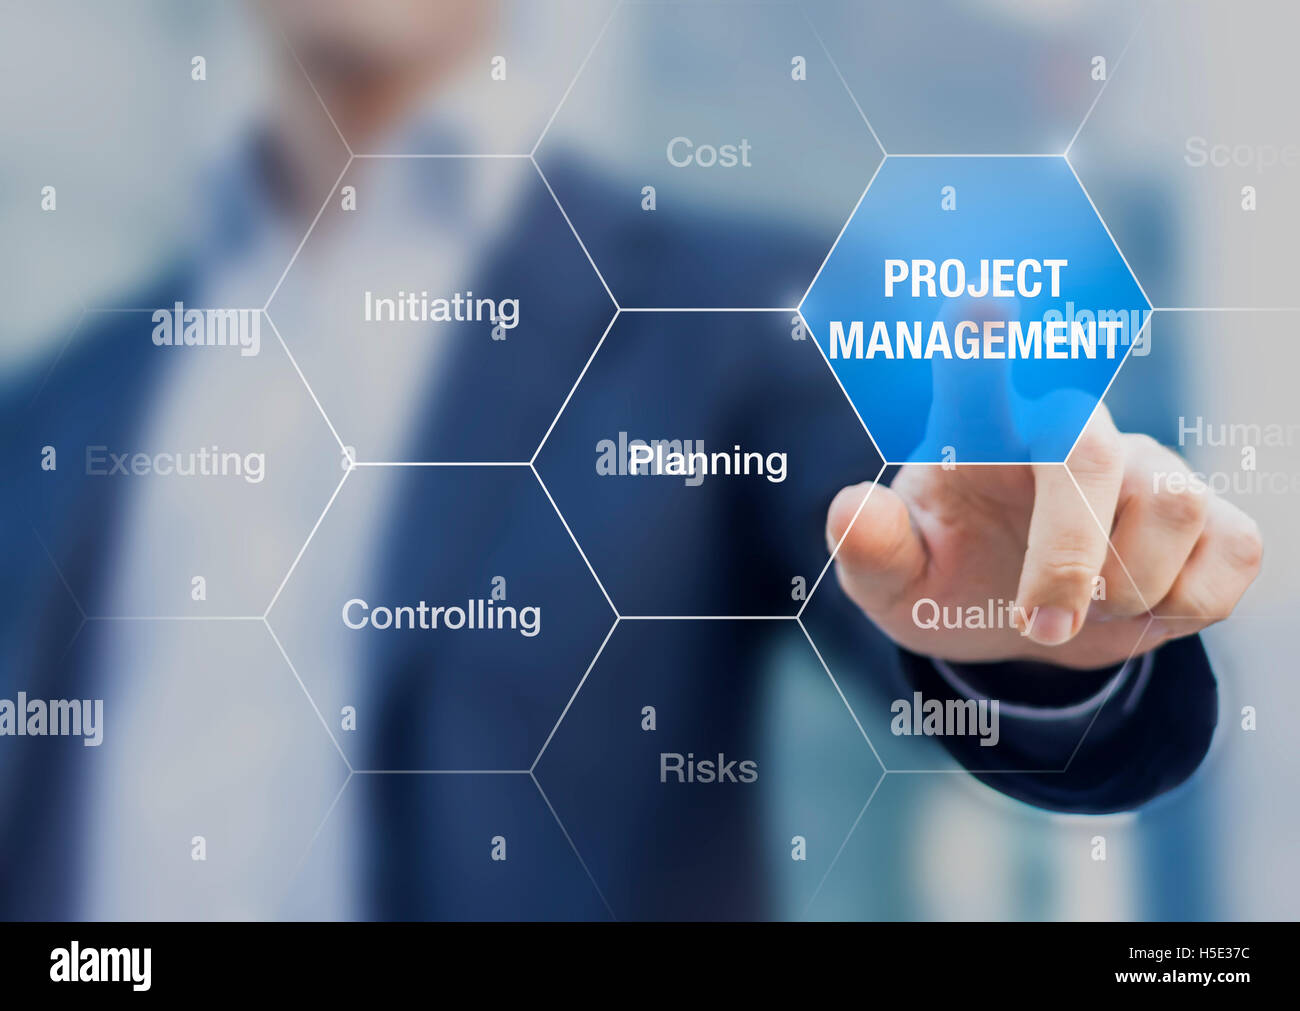 Présentation de consultant sur la gestion de projets, la planification, l'heure, la portée et les risques Banque D'Images